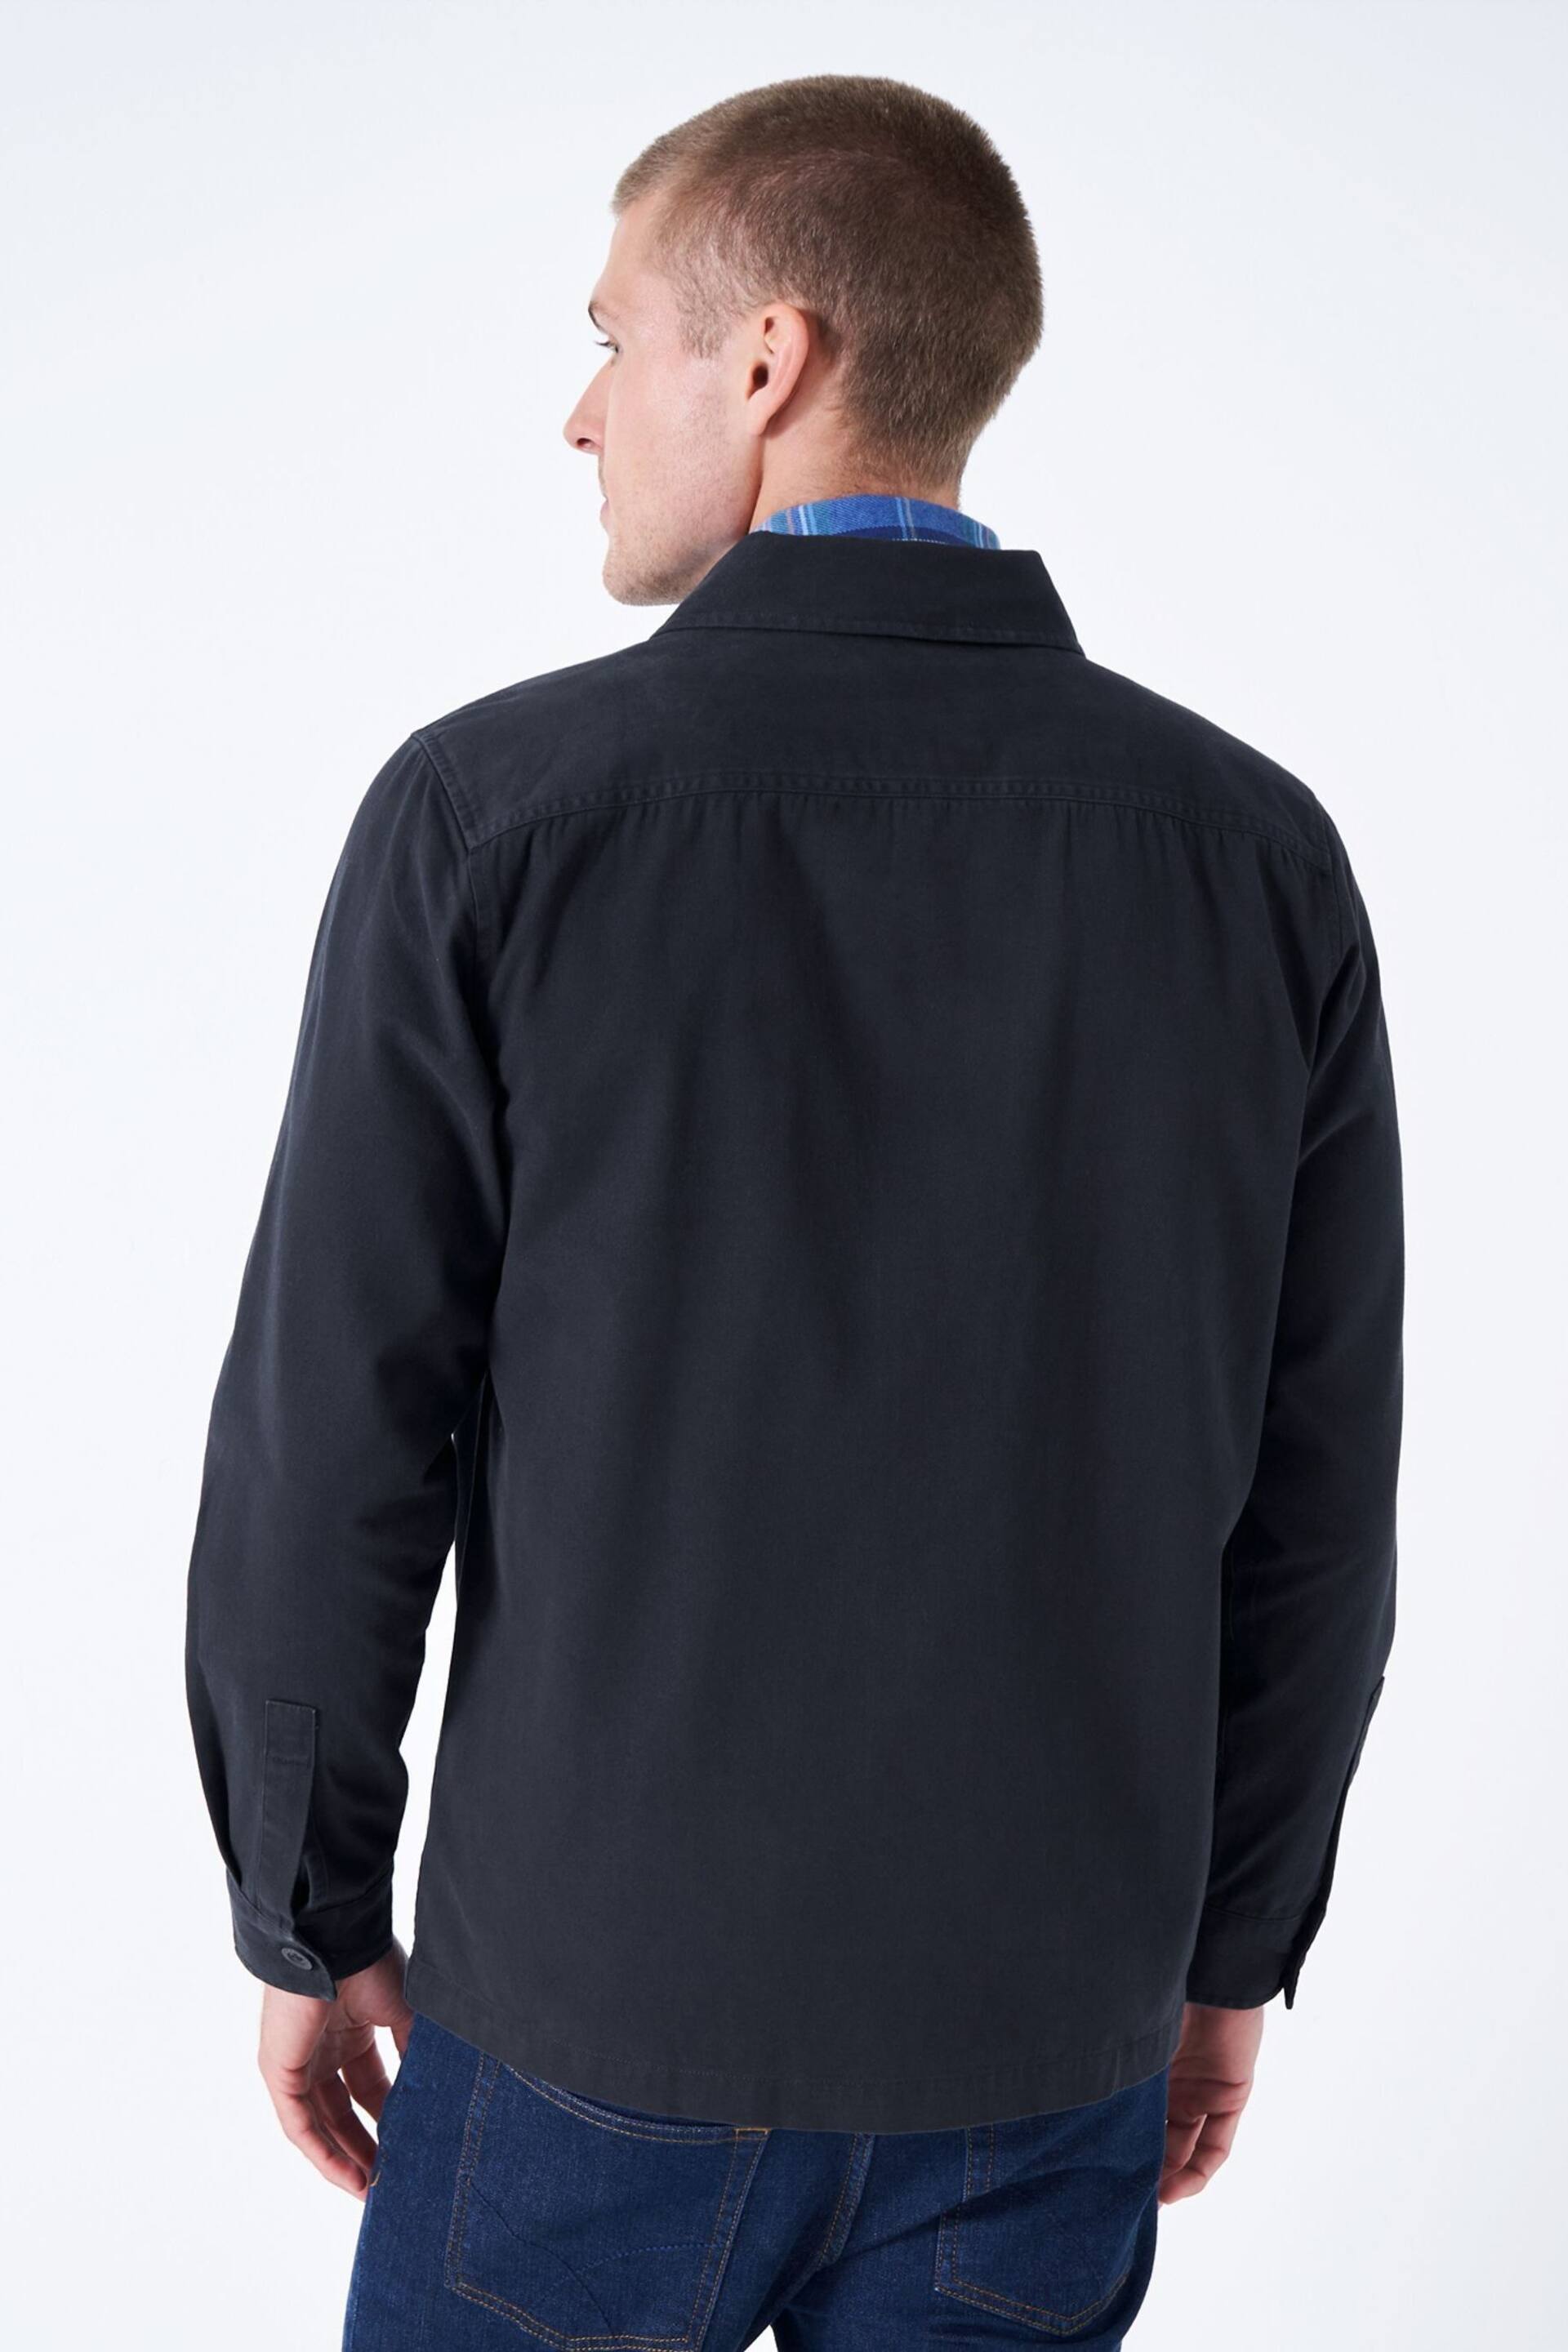 Crew Clothing Company Jenson Overshirt Jacket - Image 3 of 5